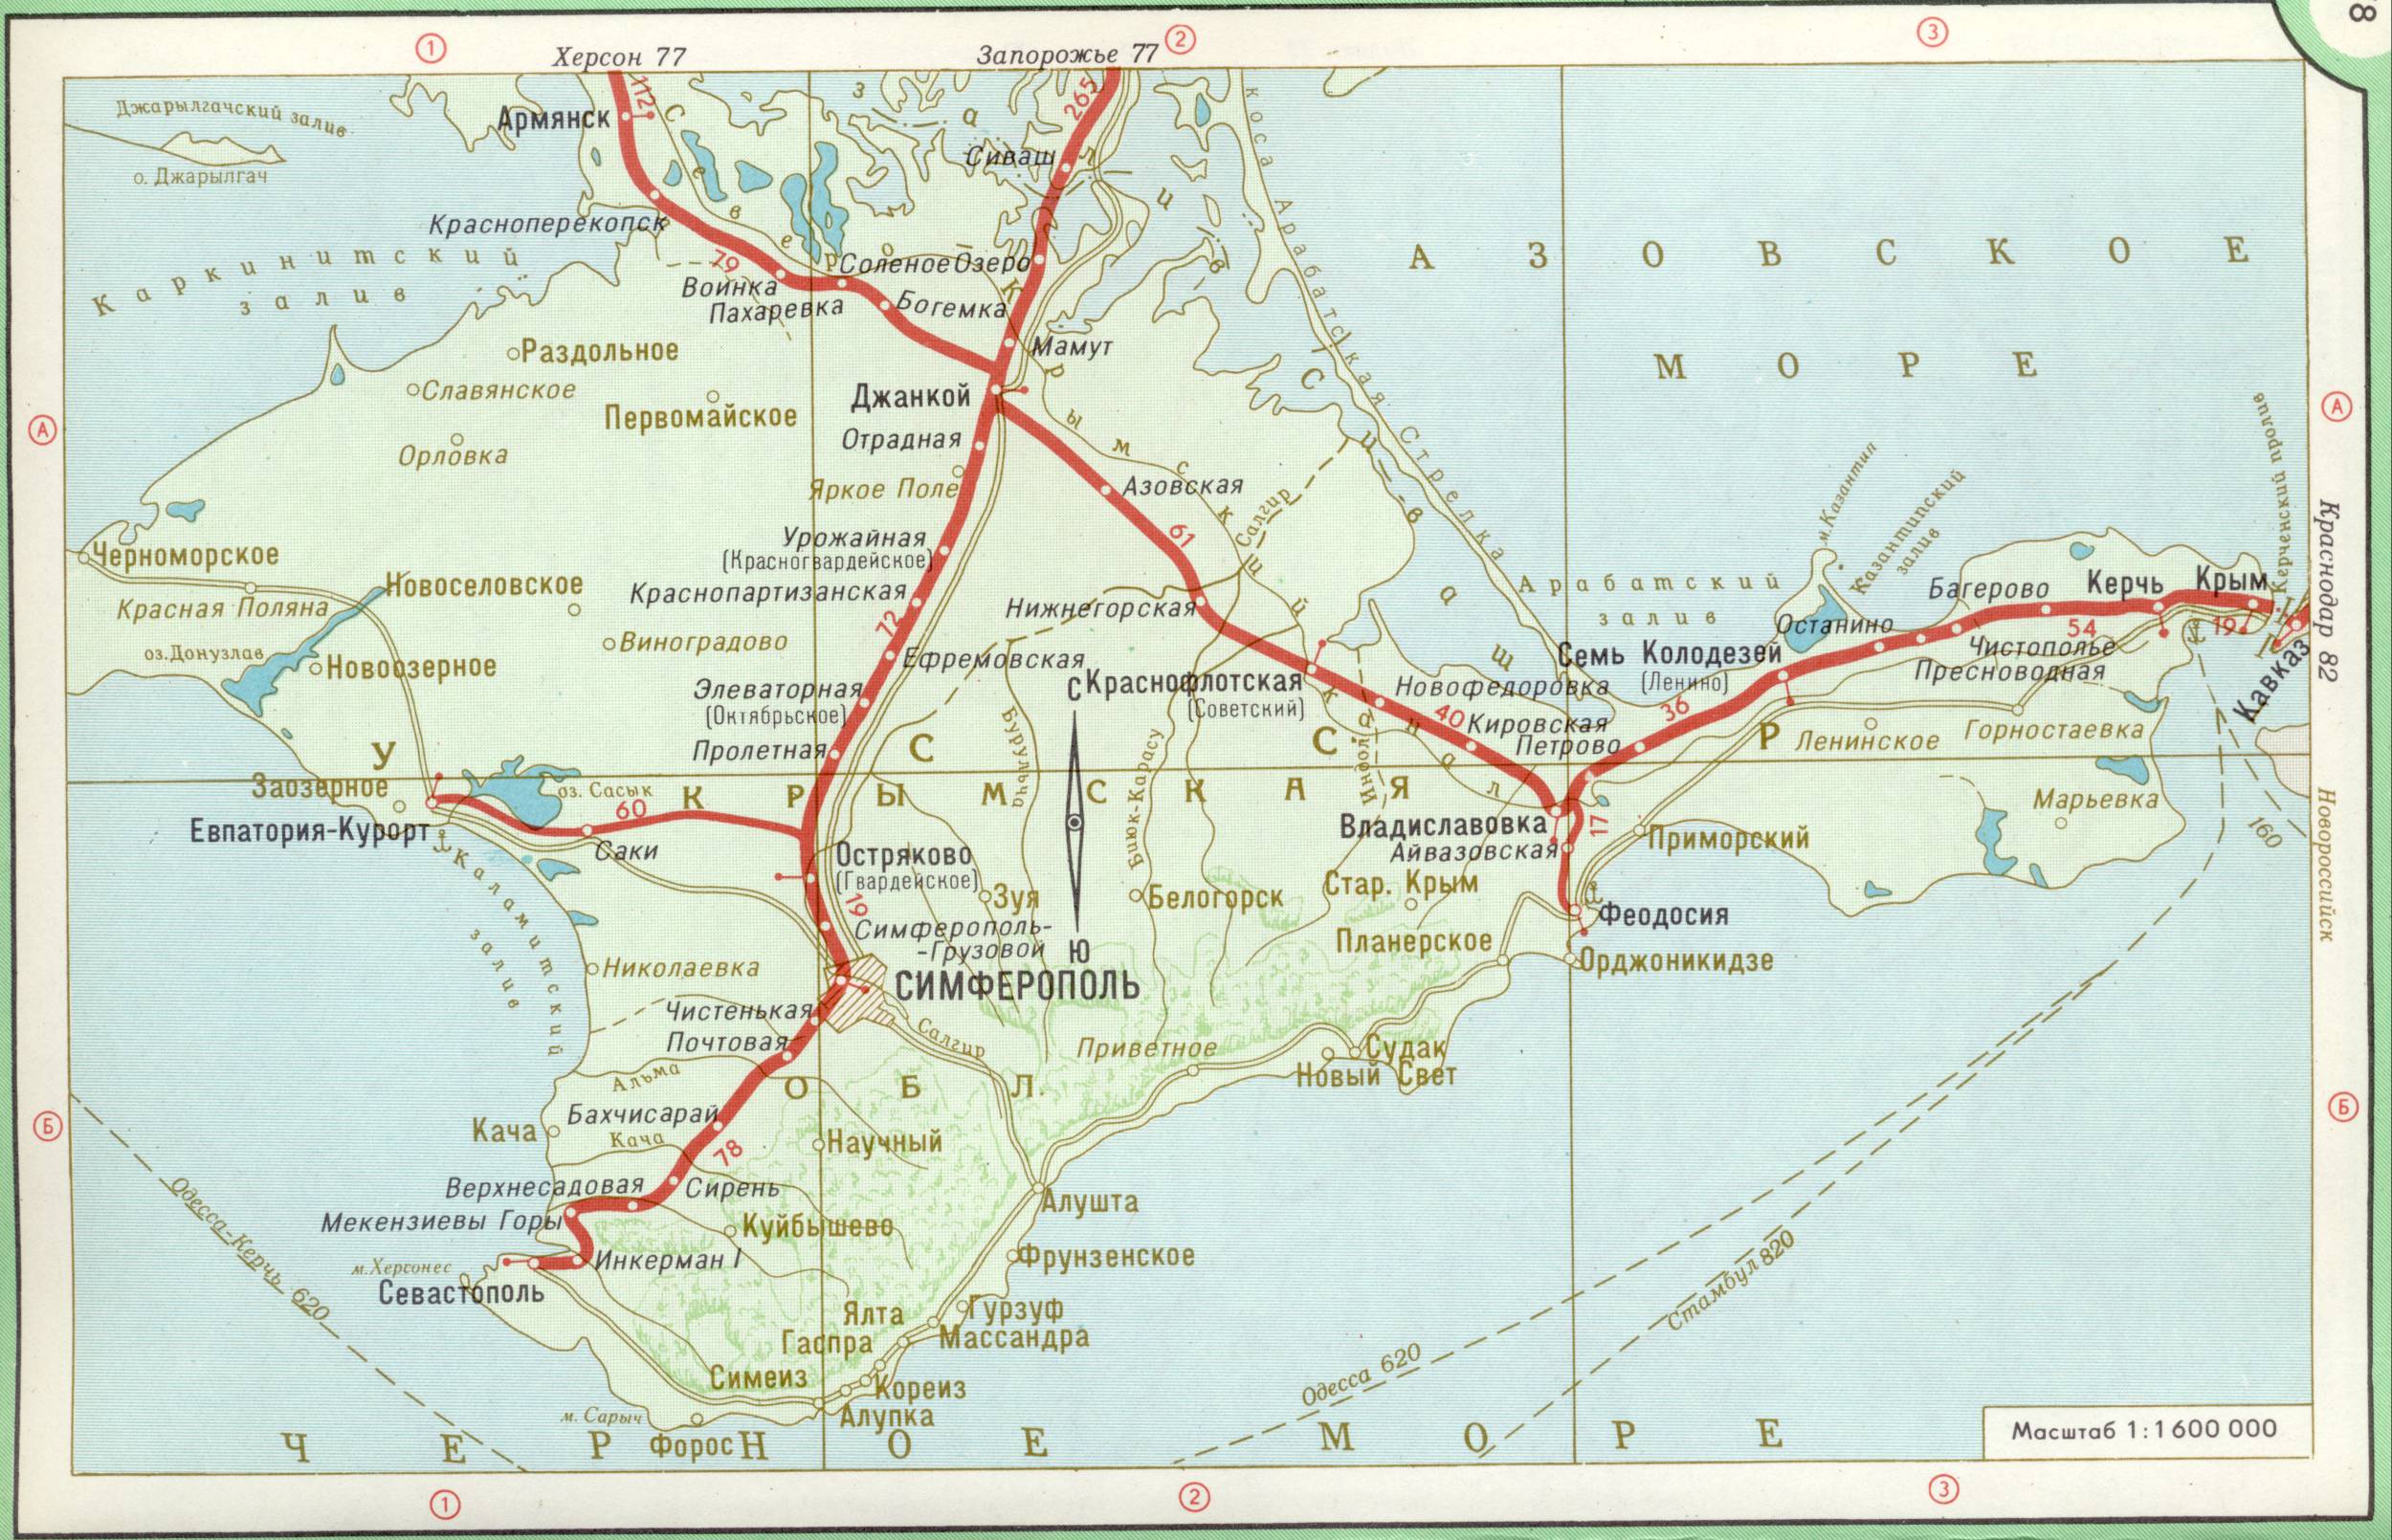 Карта Крыма. Карта железных дорог полуострова Крым. Скачать бесплатно